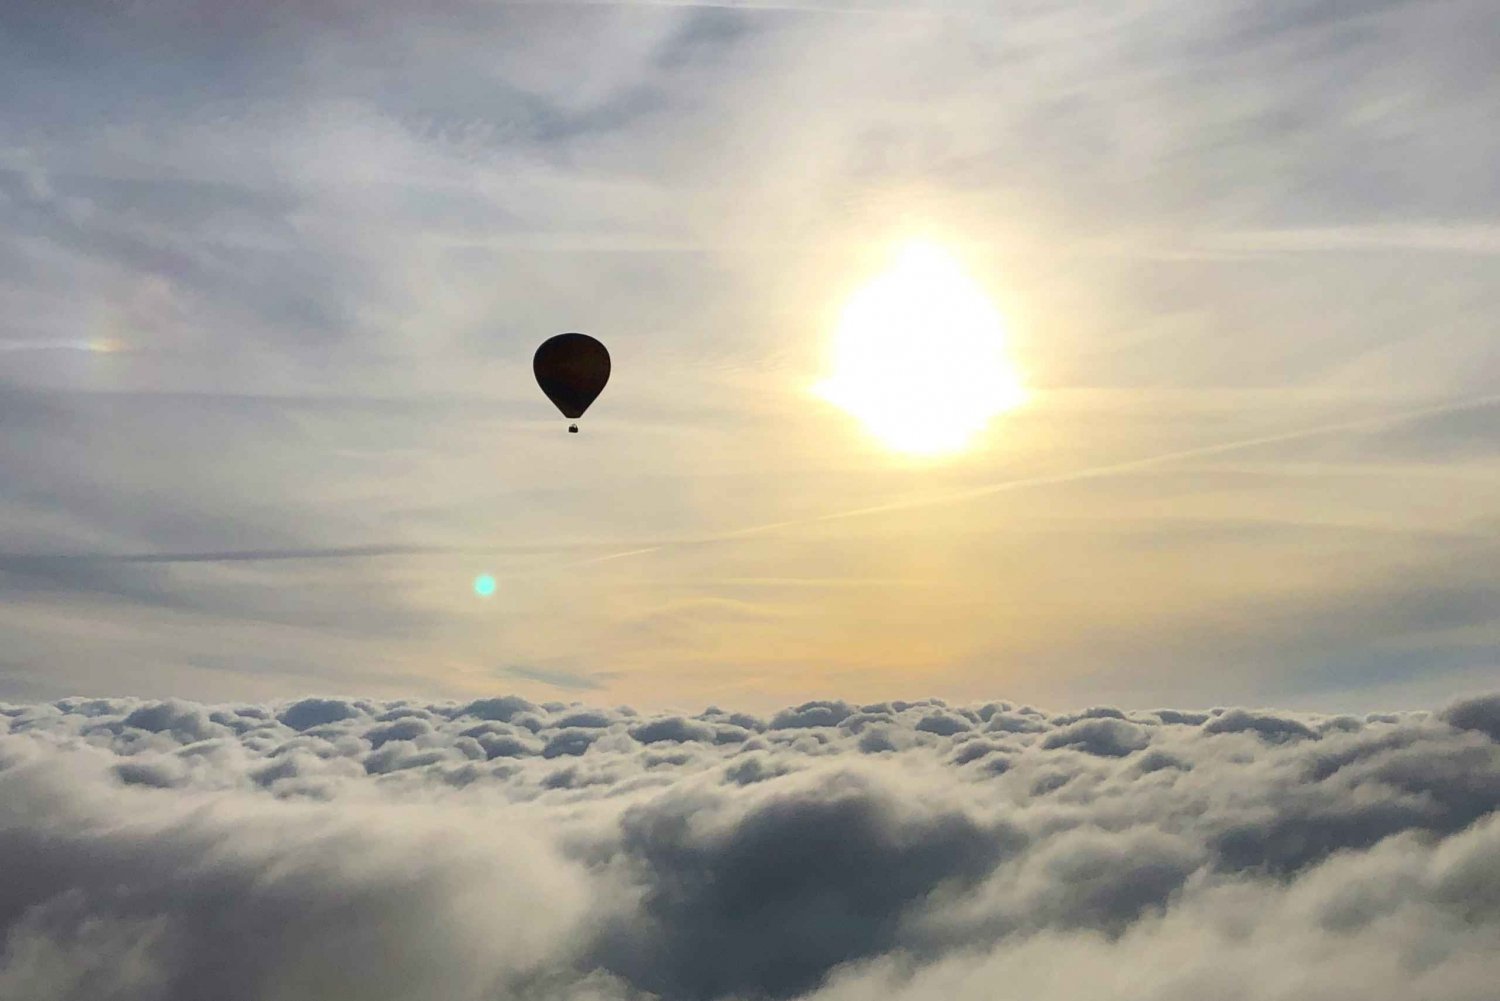 Barcelona: Luchtballonvaart voor de Pyreneeën